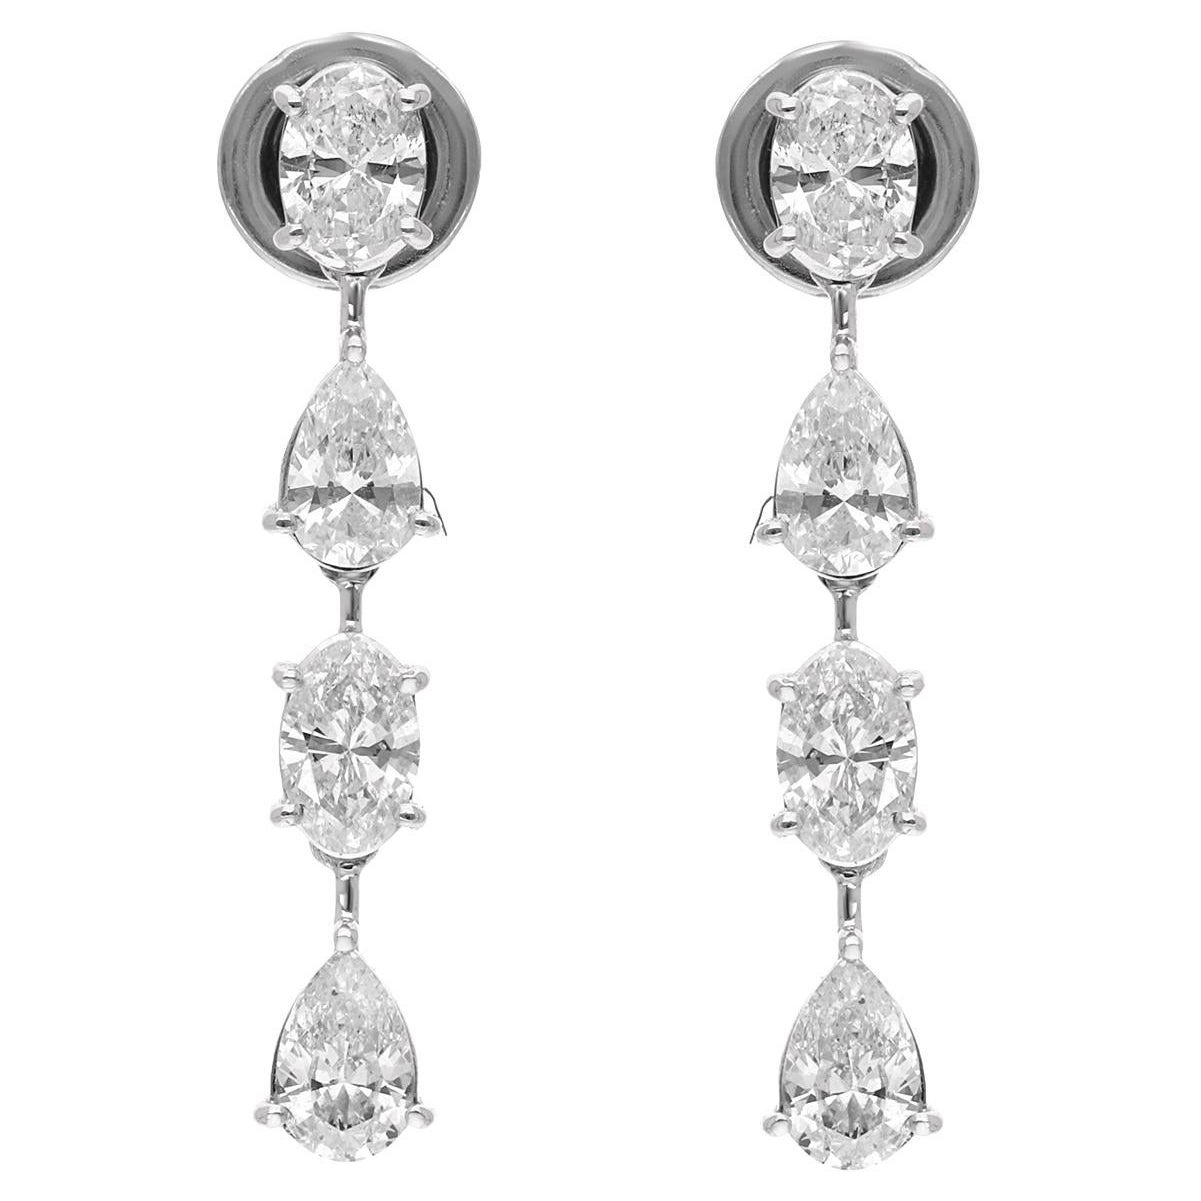 Oval & Pear Diamond Dangle Earrings 18 Karat White Gold Handmade Fine Jewelry